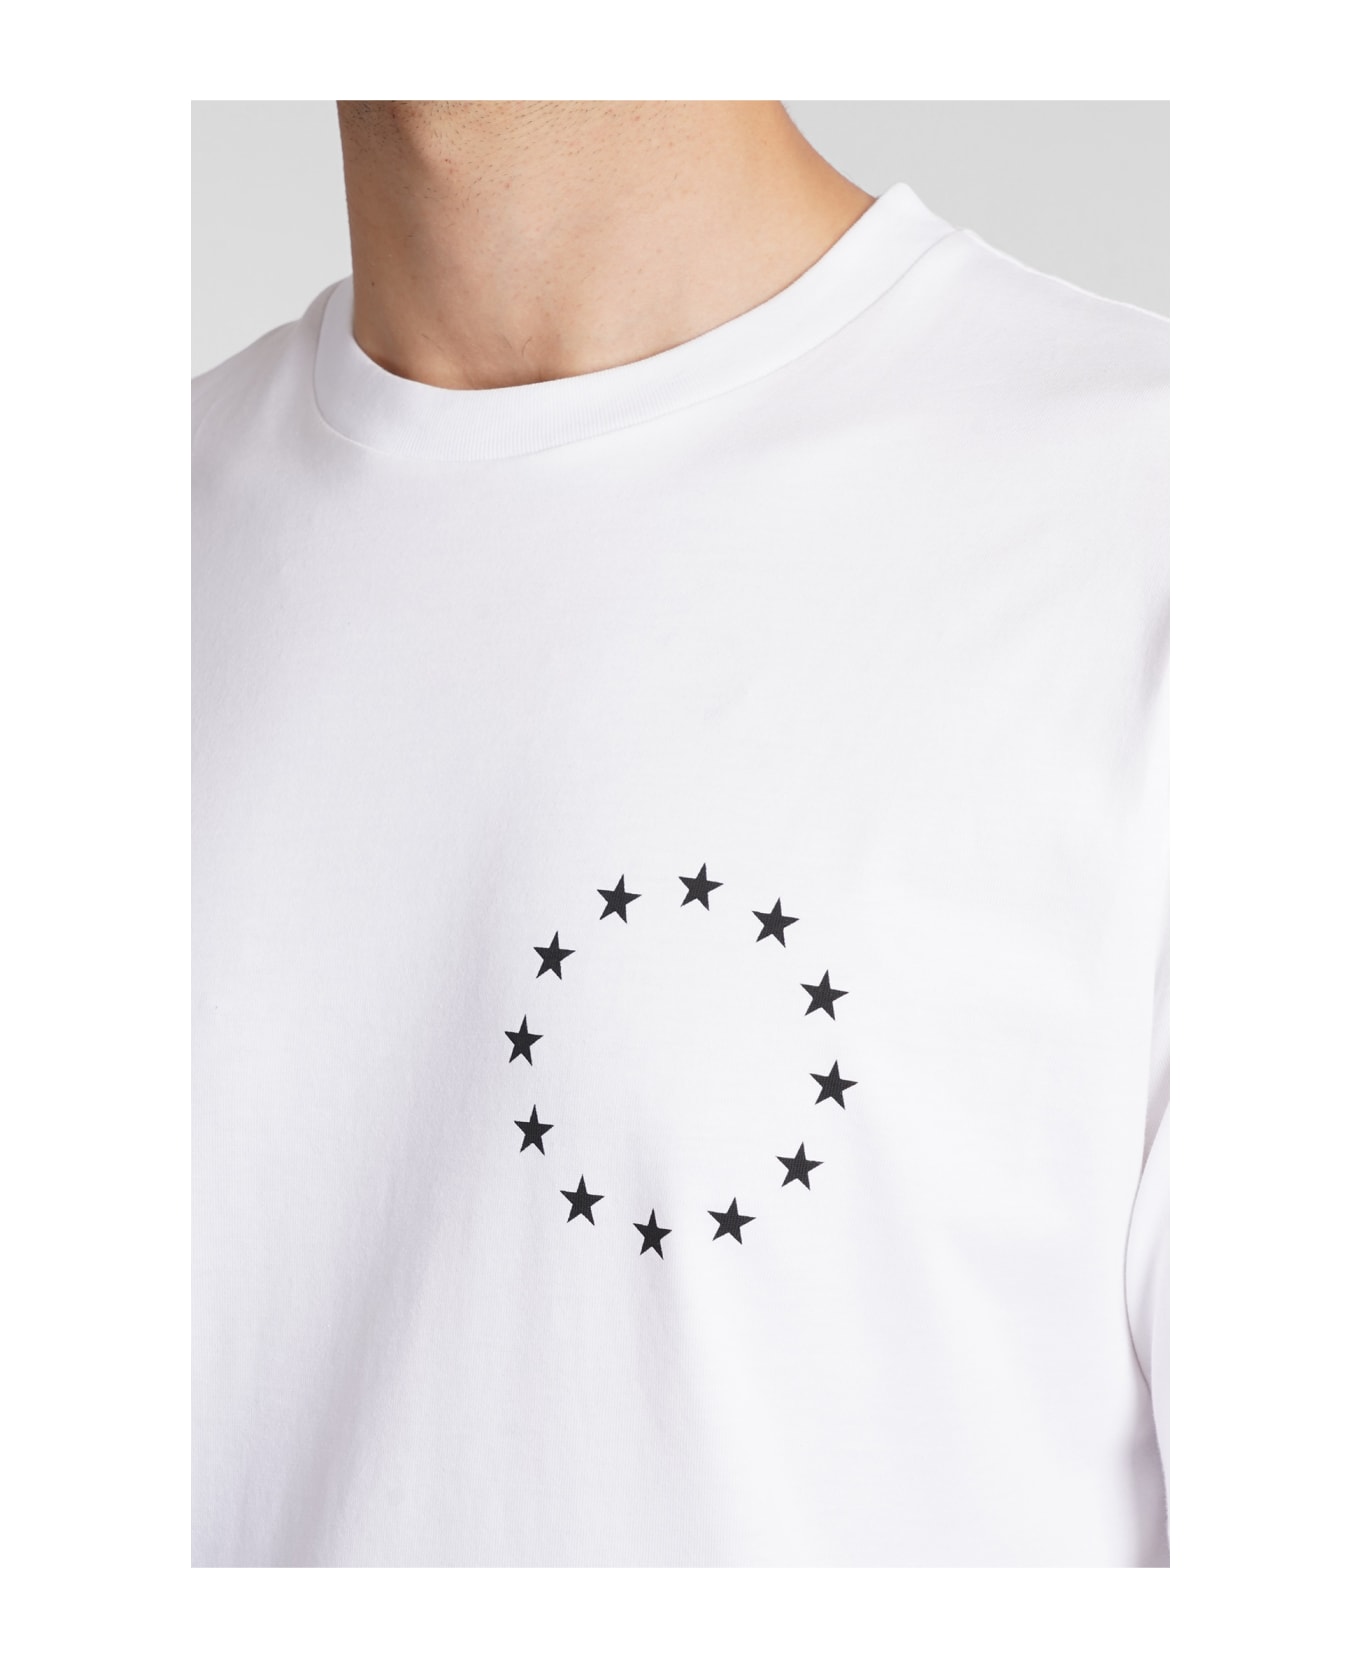 Études T-shirt In White Cotton - white